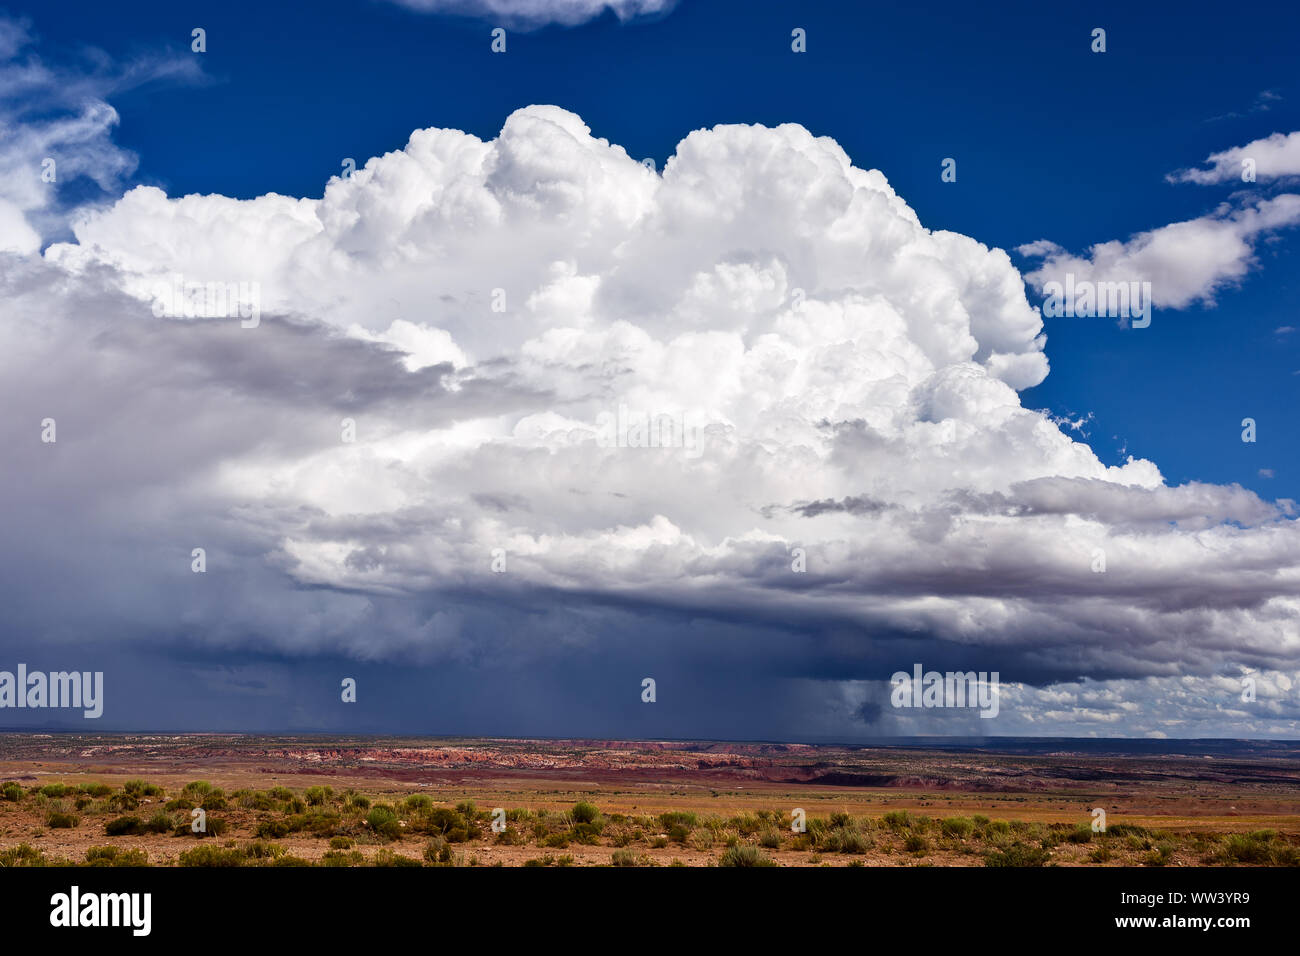 Facturant des nuages de cumulonimbus d'un orage en développement dans le ciel près de Nazlini, Arizona Banque D'Images